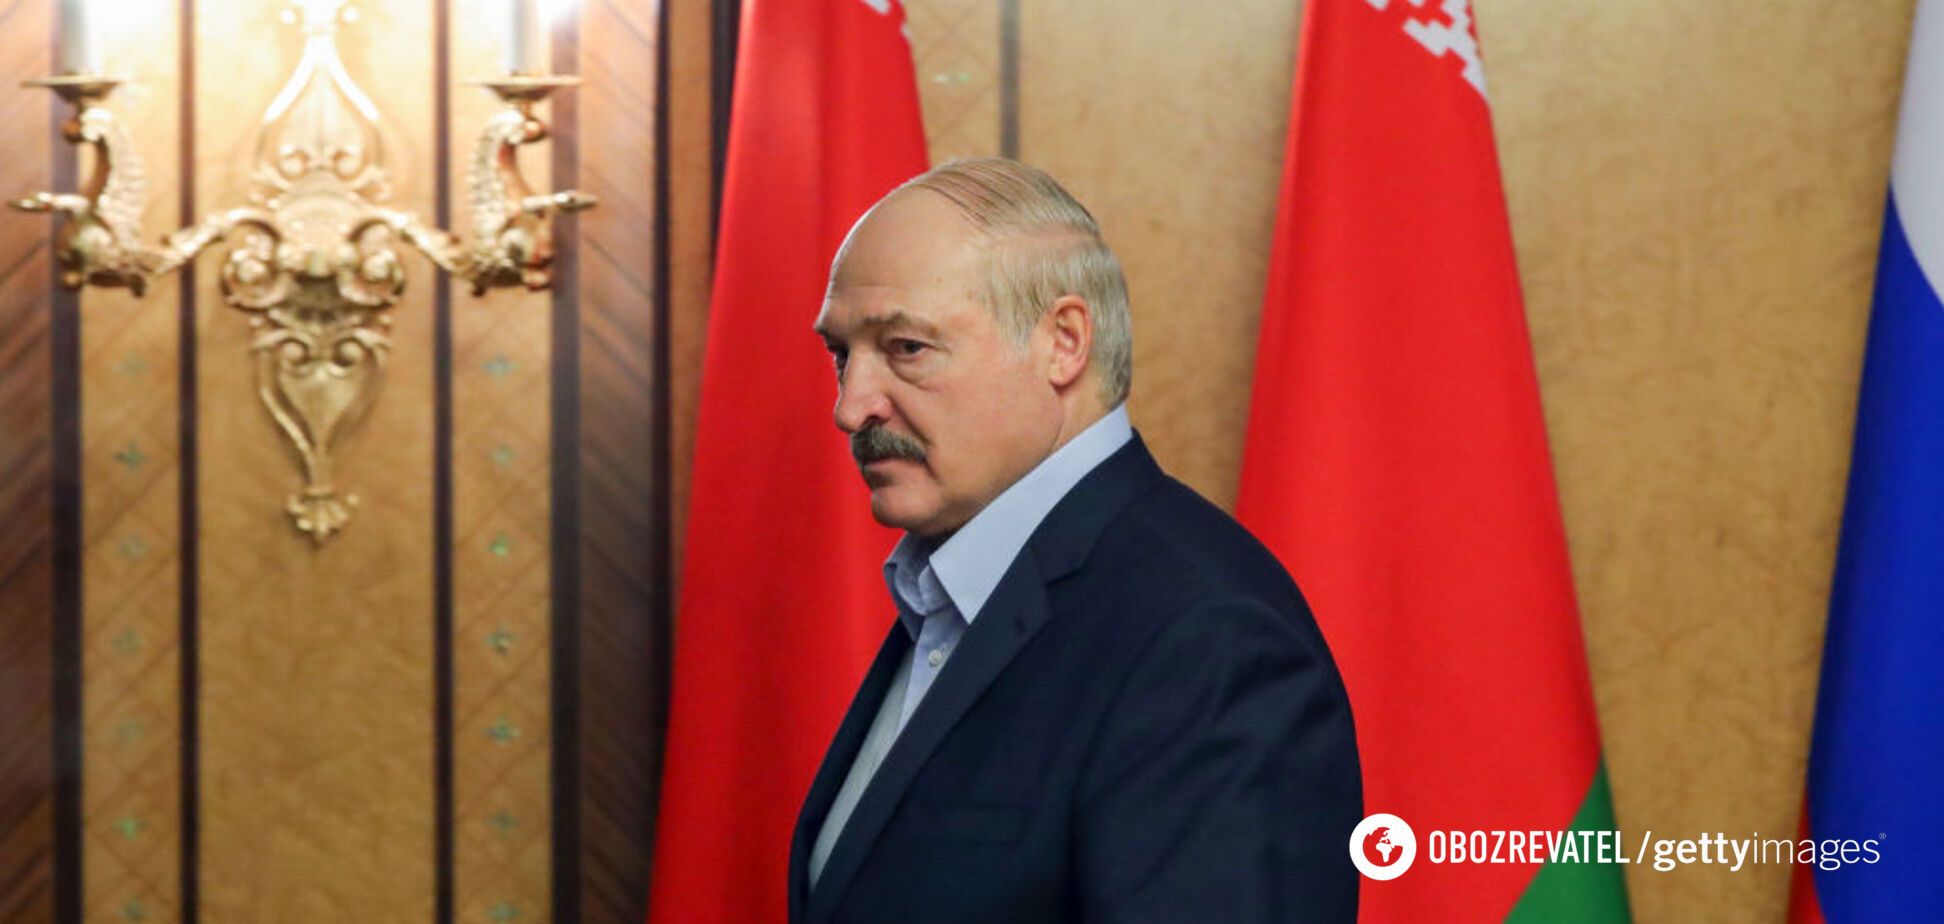 Переворота или 'майдана' в Беларуси не будет: Лукашенко сделал заявление накануне выборов